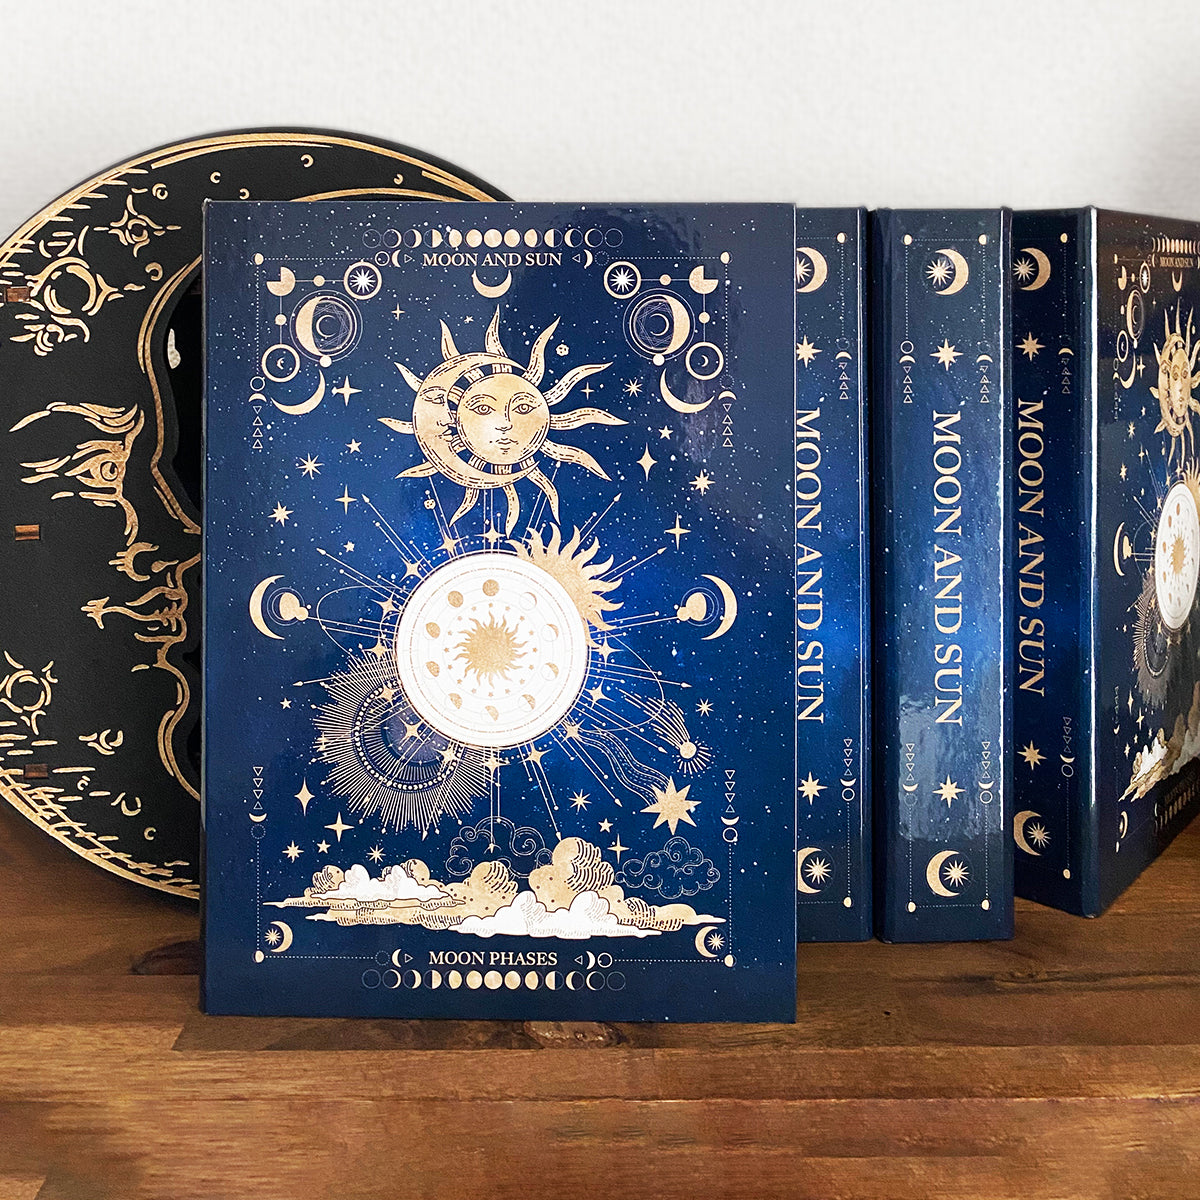 【小物入れ】魔法の本のようなブックボックス 月と太陽、始まりの物語 MOONu0026SUN